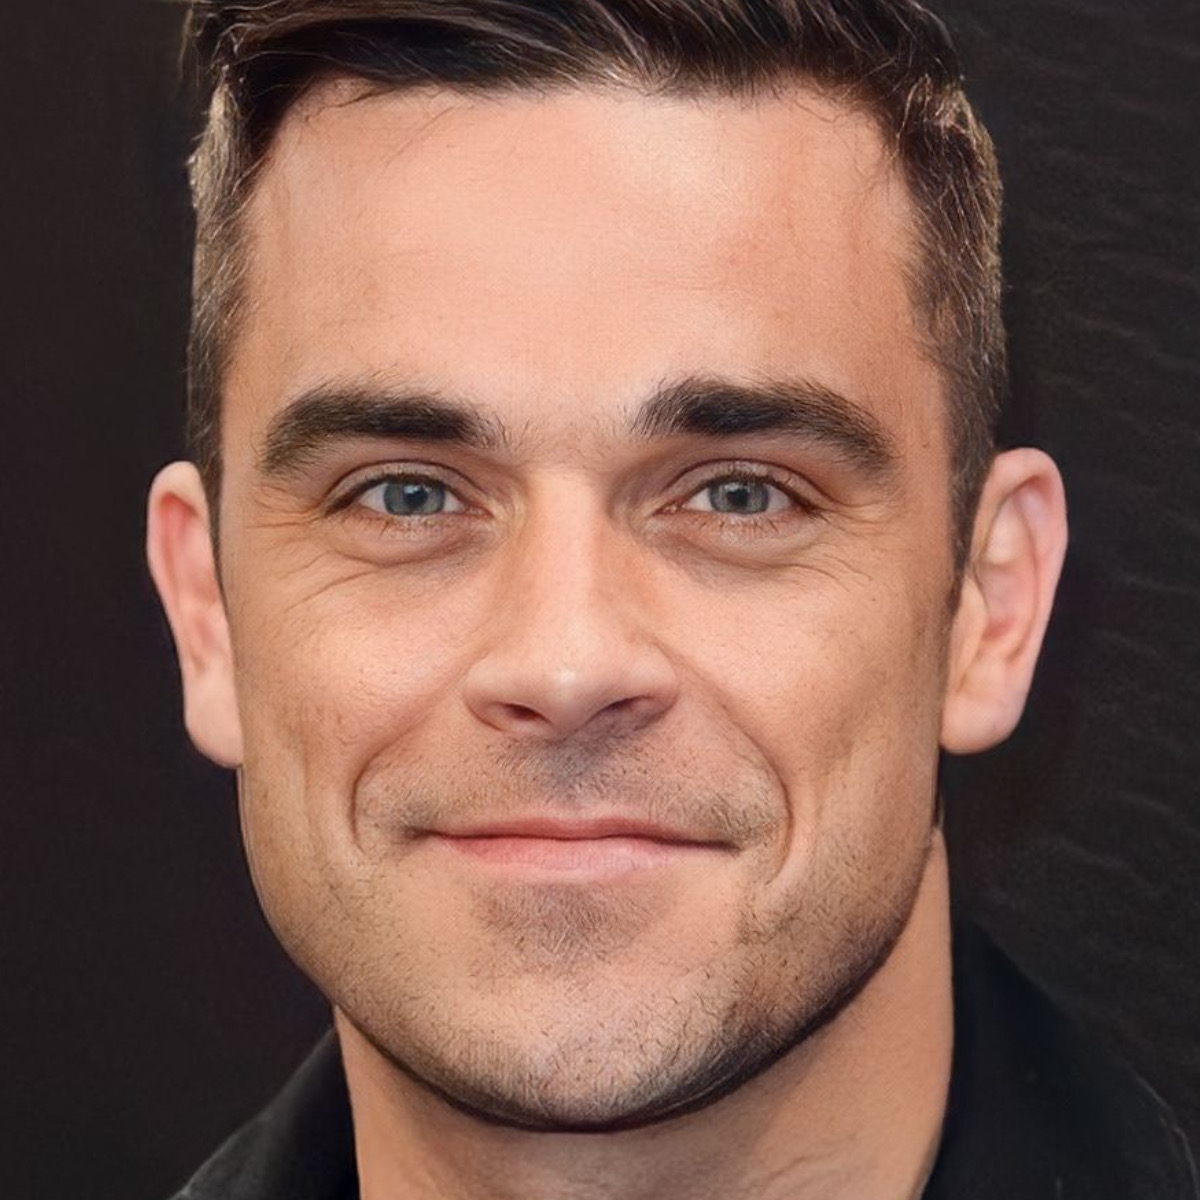 Robbie Williams atualmente